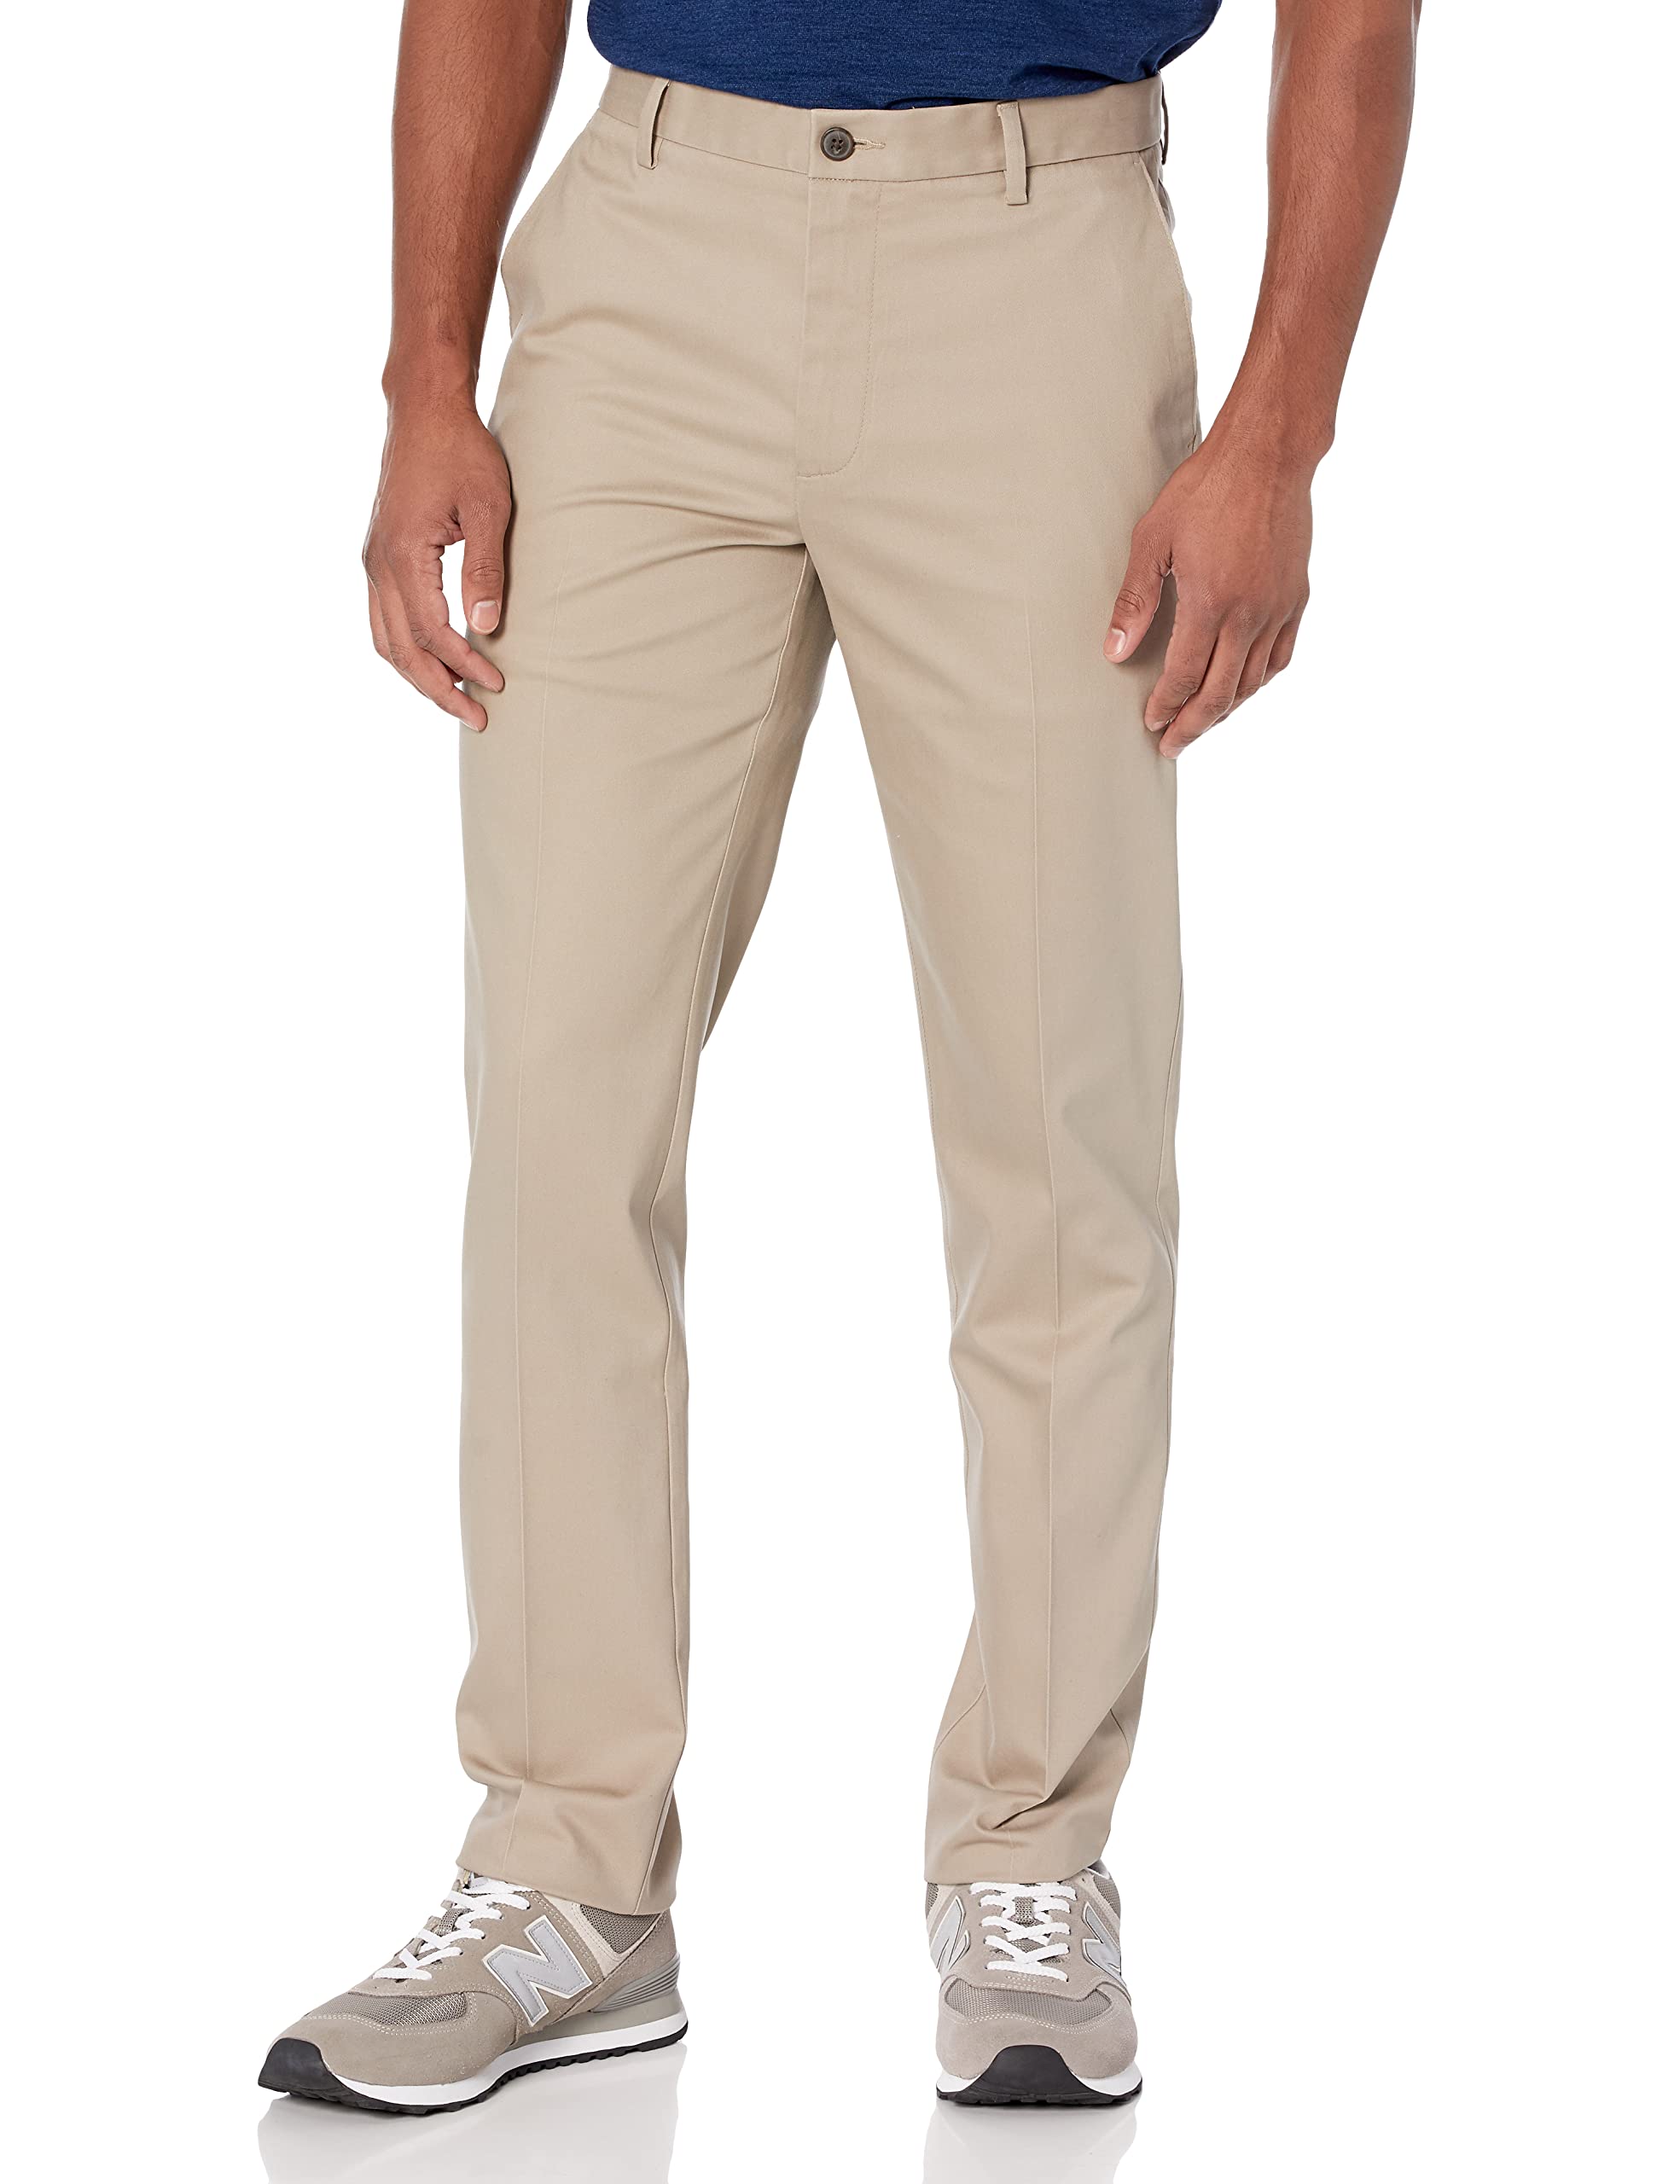 Haggar Mens Big & Tall Classic Fit Wrinkle Free Dress Pants Beige 46/29 -  Walmart.com